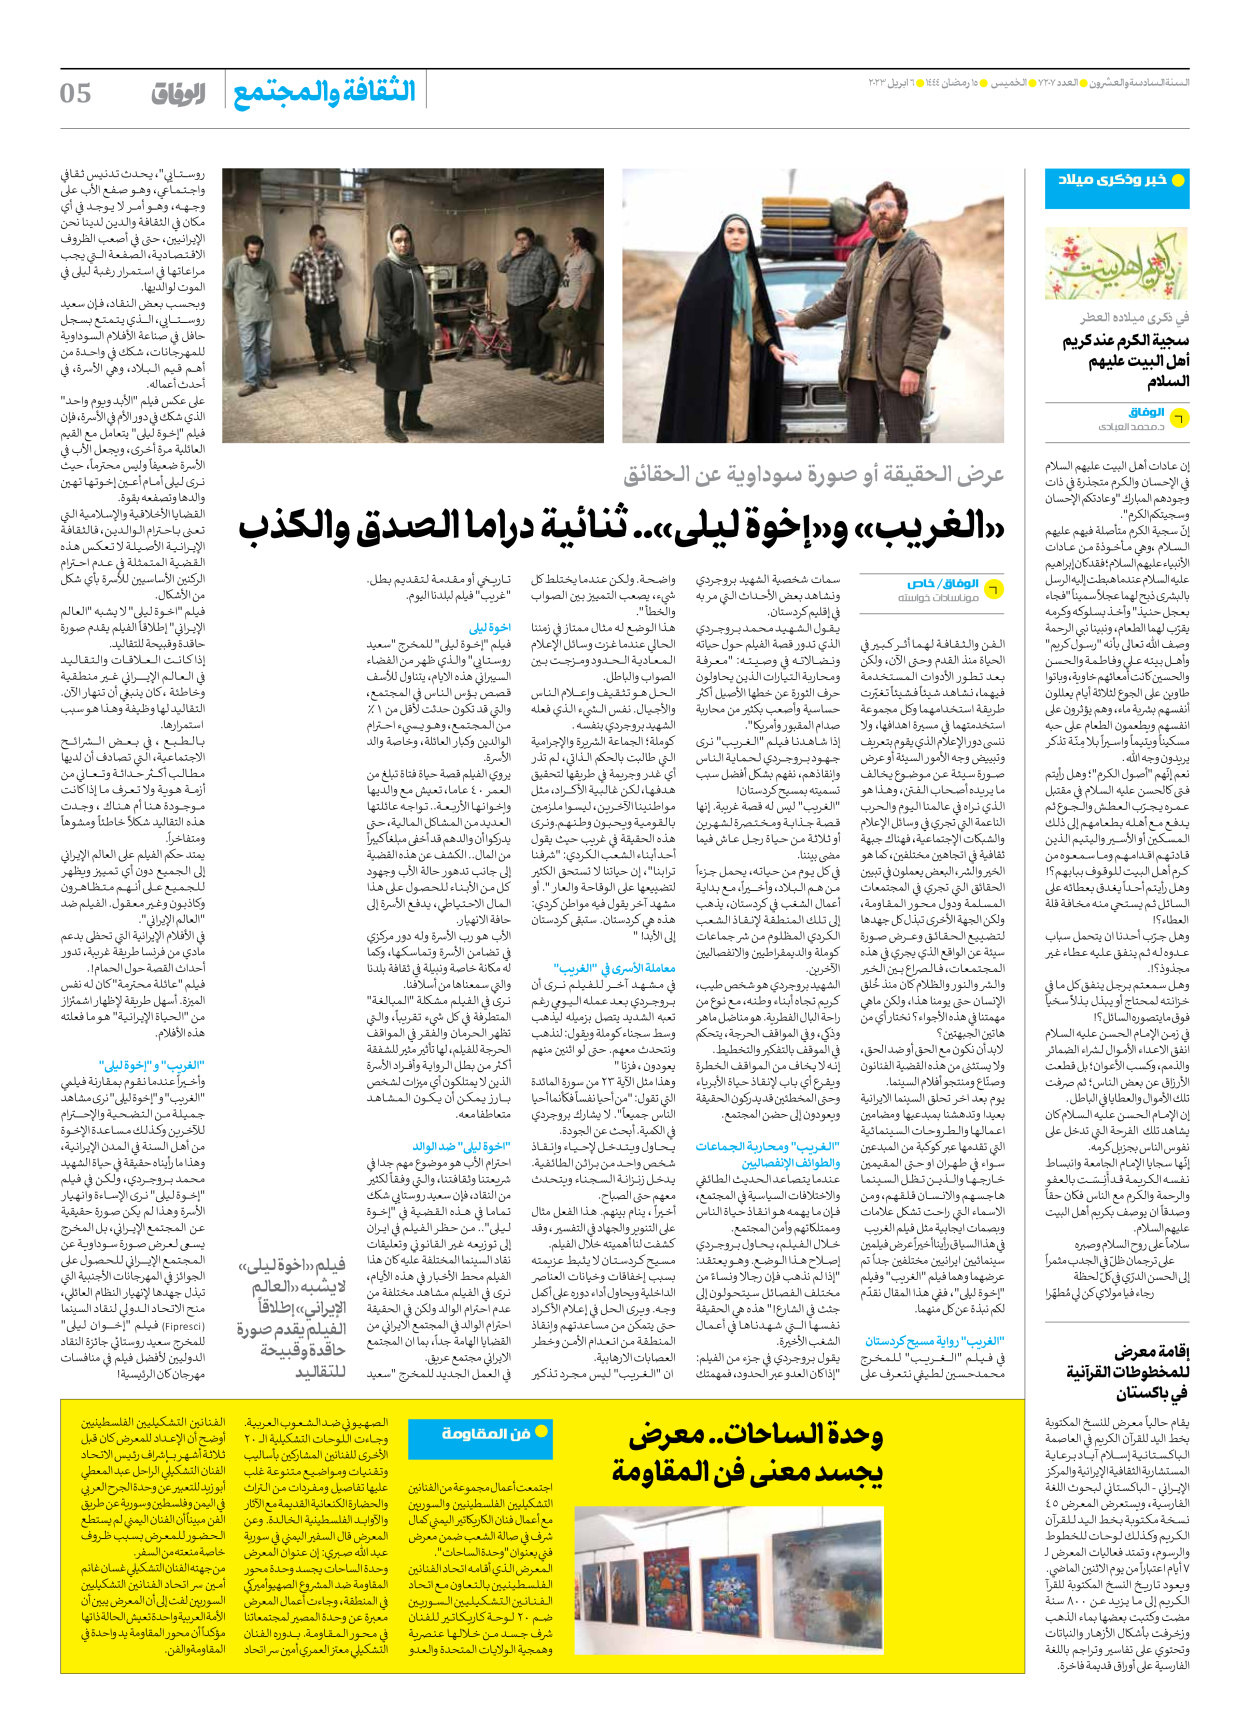 صحیفة ایران الدولیة الوفاق - العدد سبعة آلاف ومائتان وسبعة - ٠٦ أبريل ٢٠٢٣ - الصفحة ٥